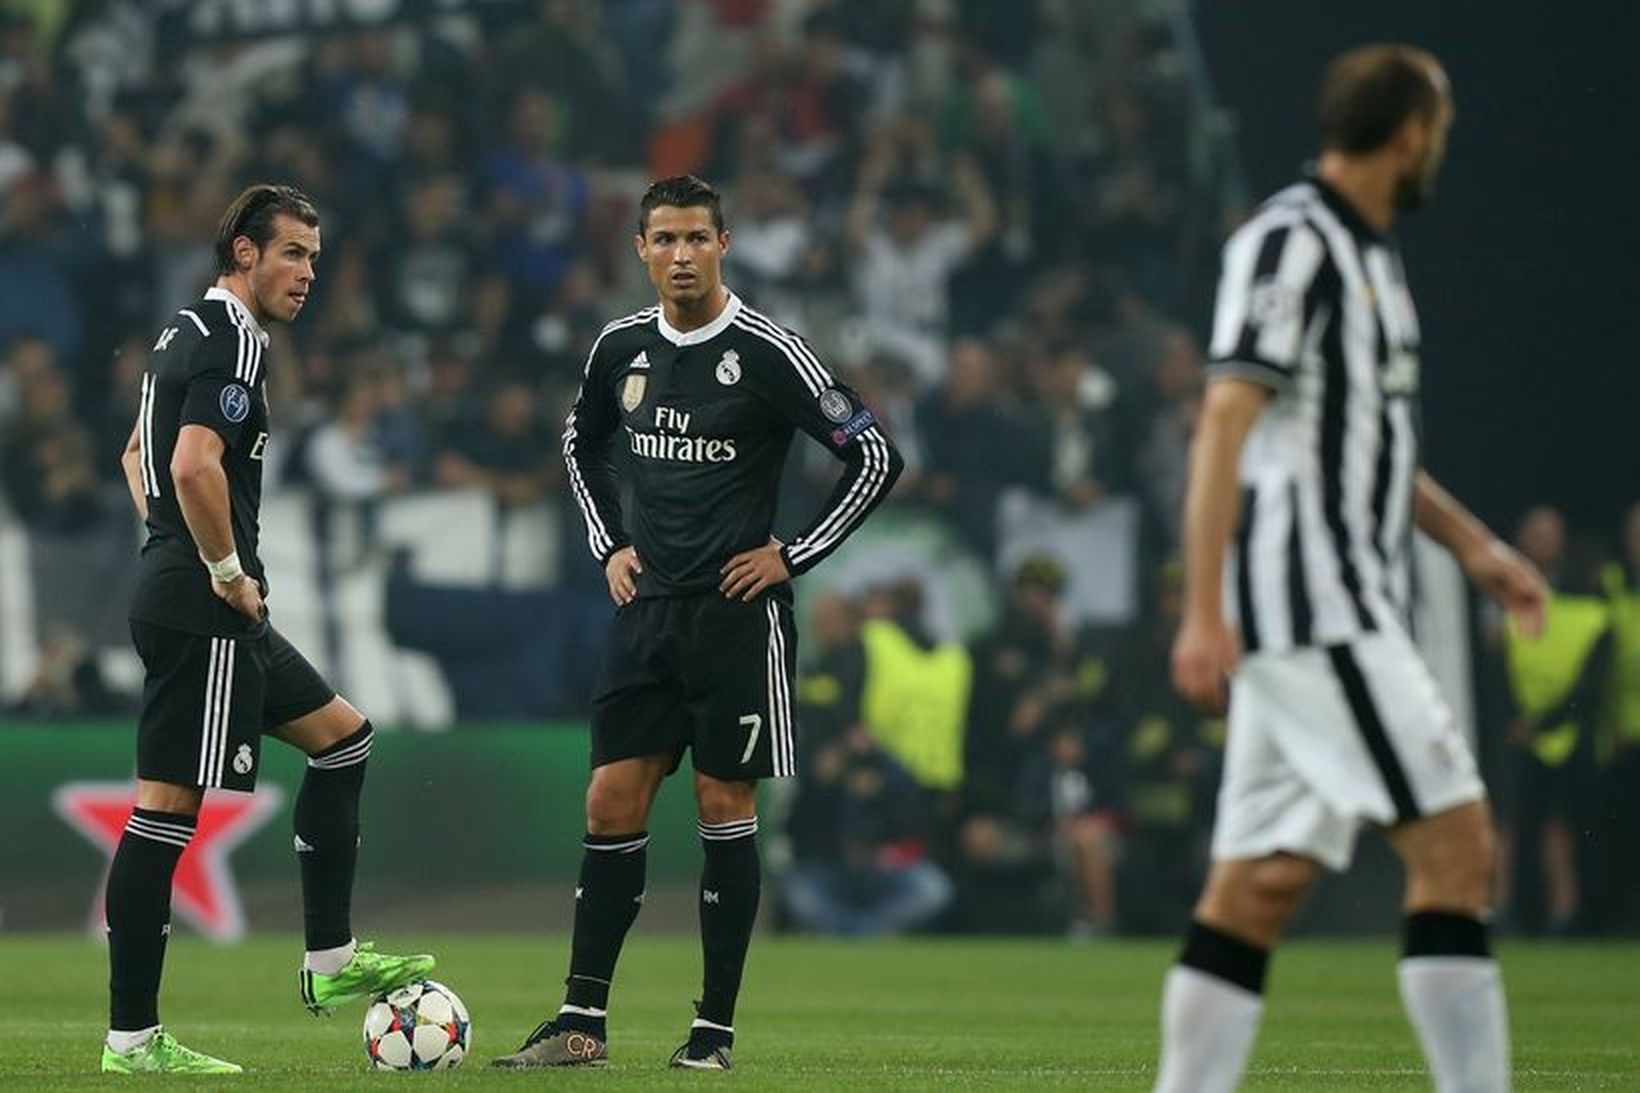 Bale ásamt Cristiano Ronaldo í leiknum gegn Juventus í gær.